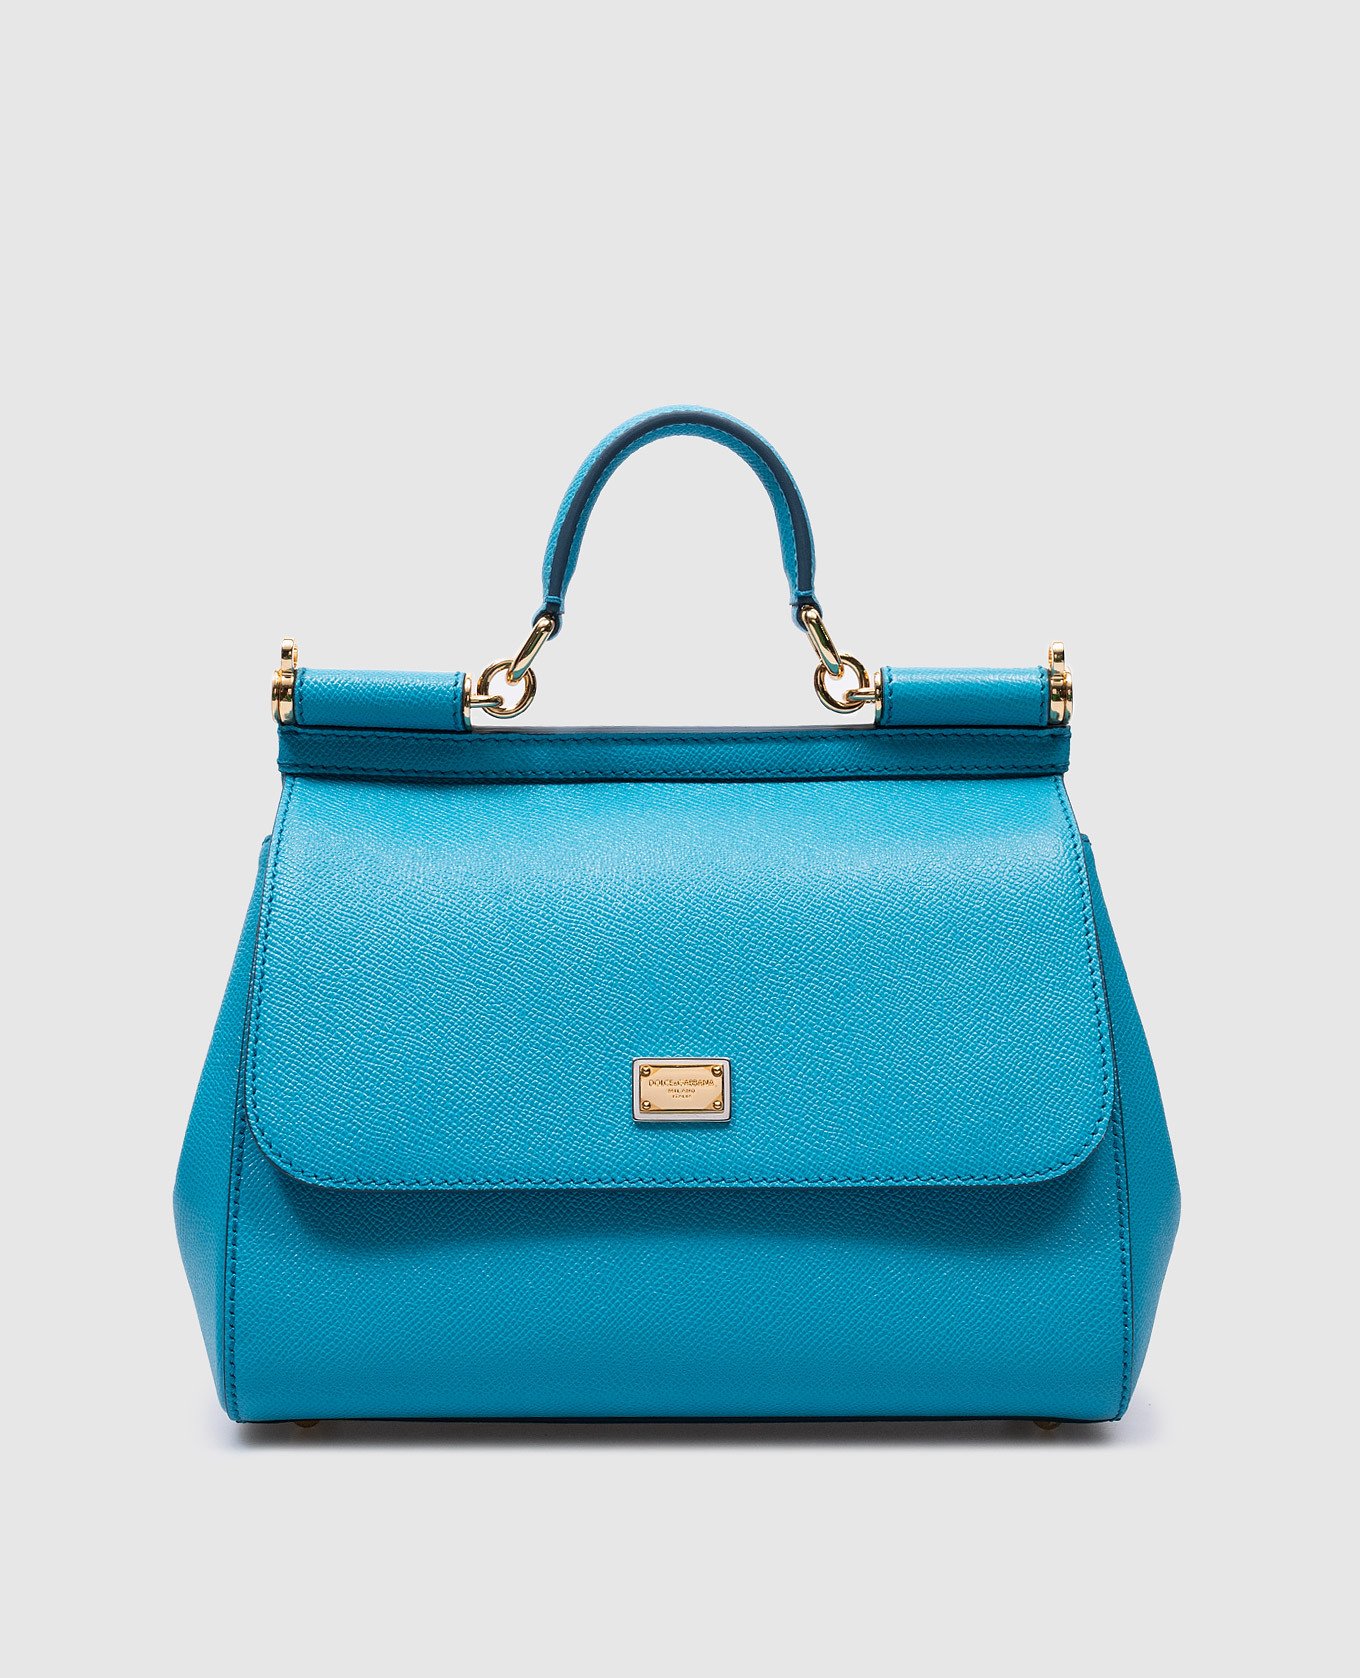 Sicily blue leather satchel bag